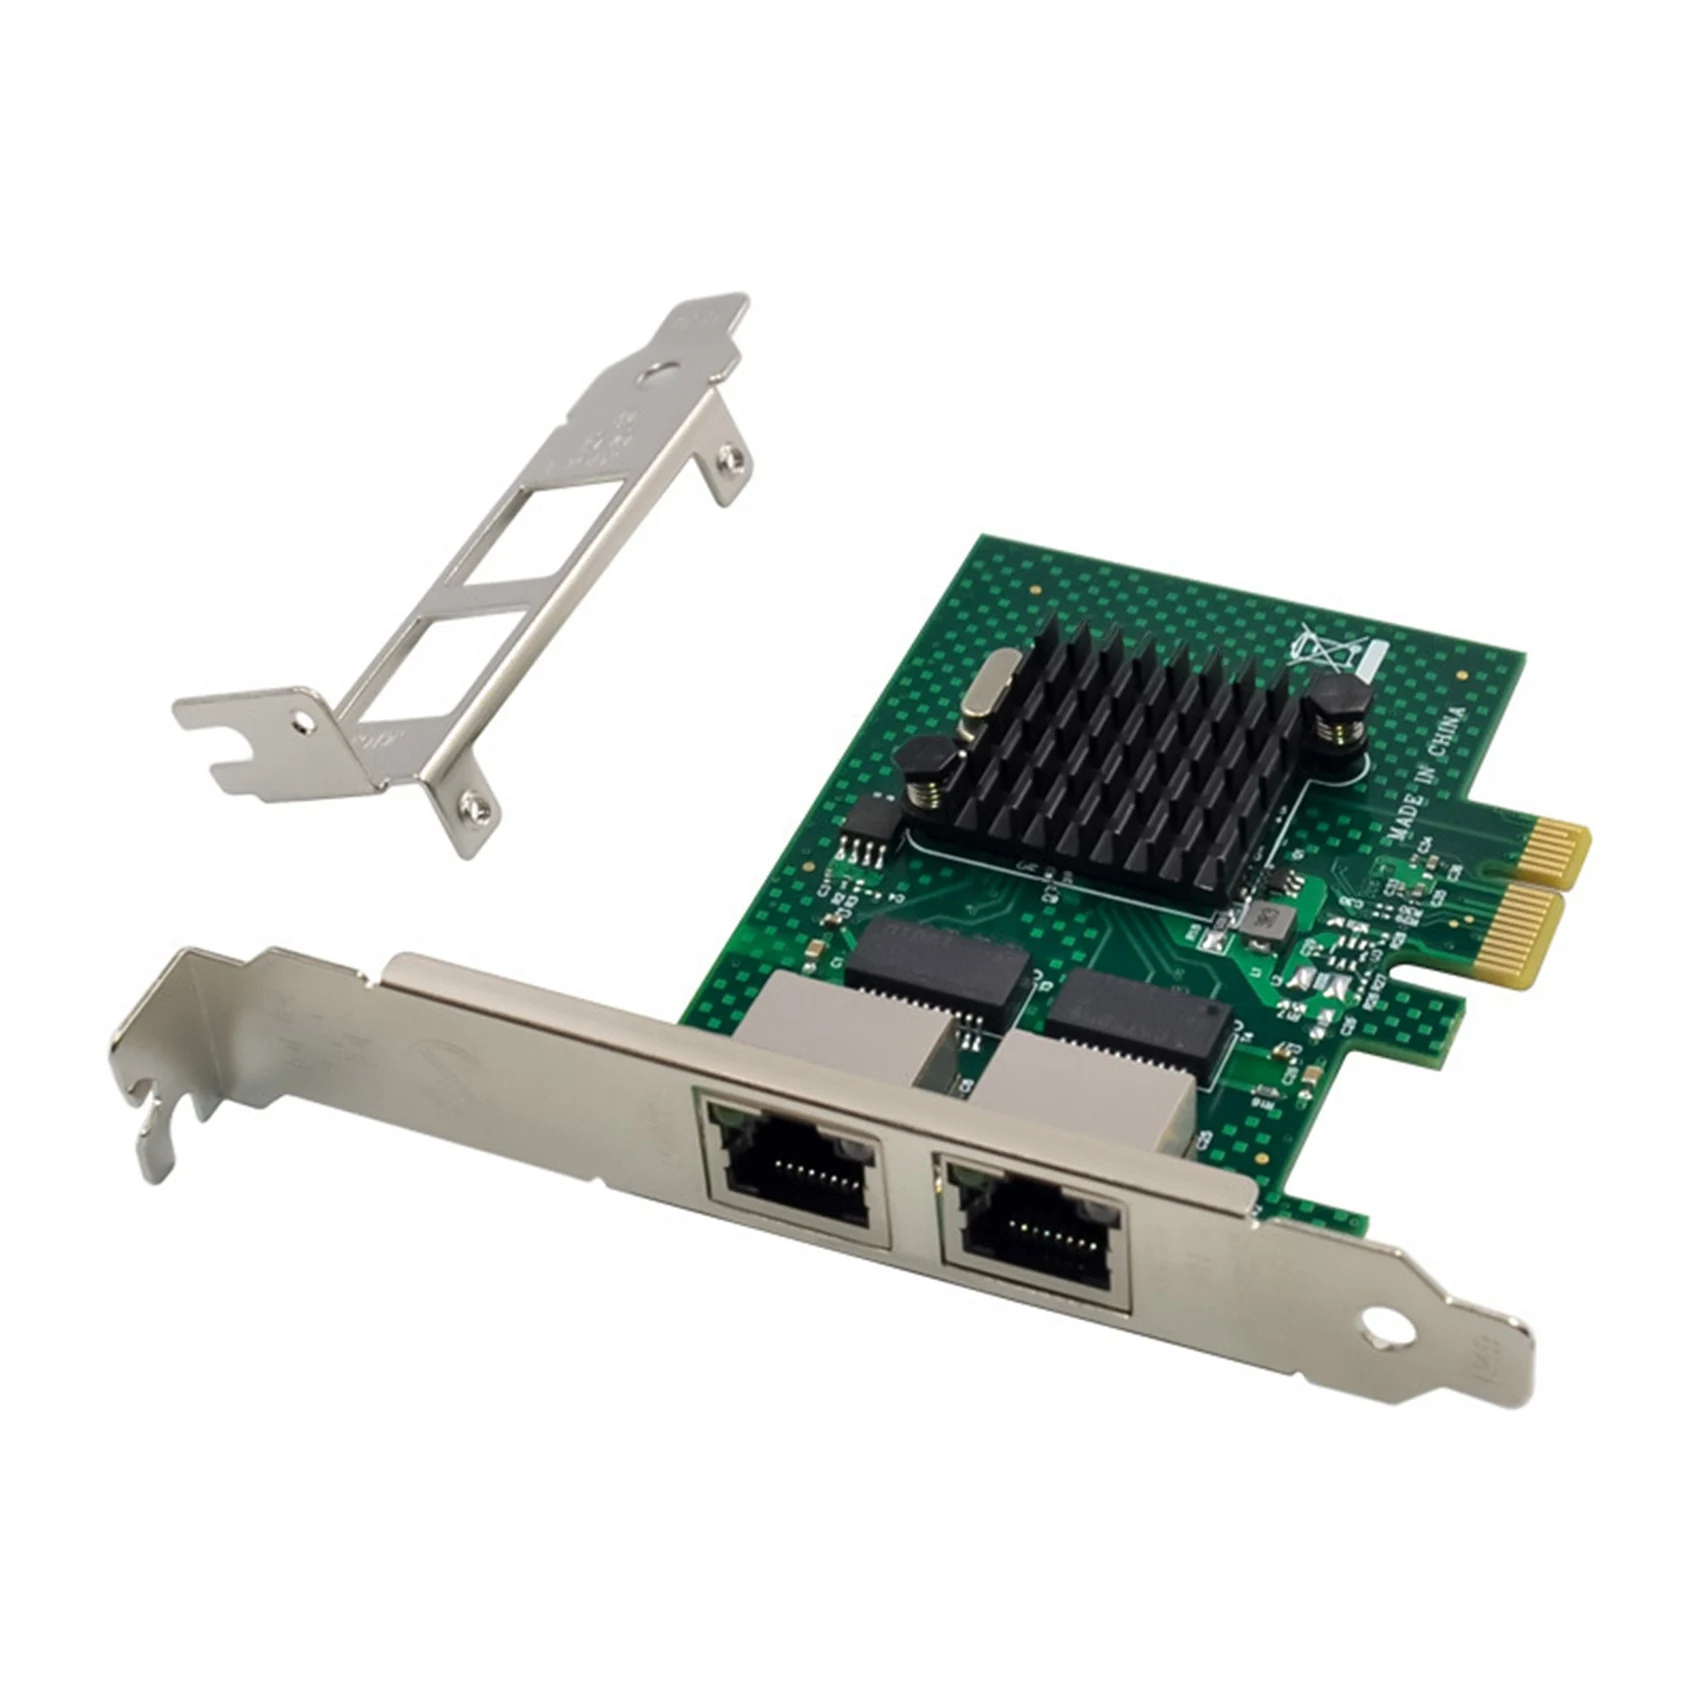 BCM5720 Сетевая карта PCIE X1 Gigabit Ethernet, двухпортовая серверная карта сетевого адаптера, совместимая с WOL PXE